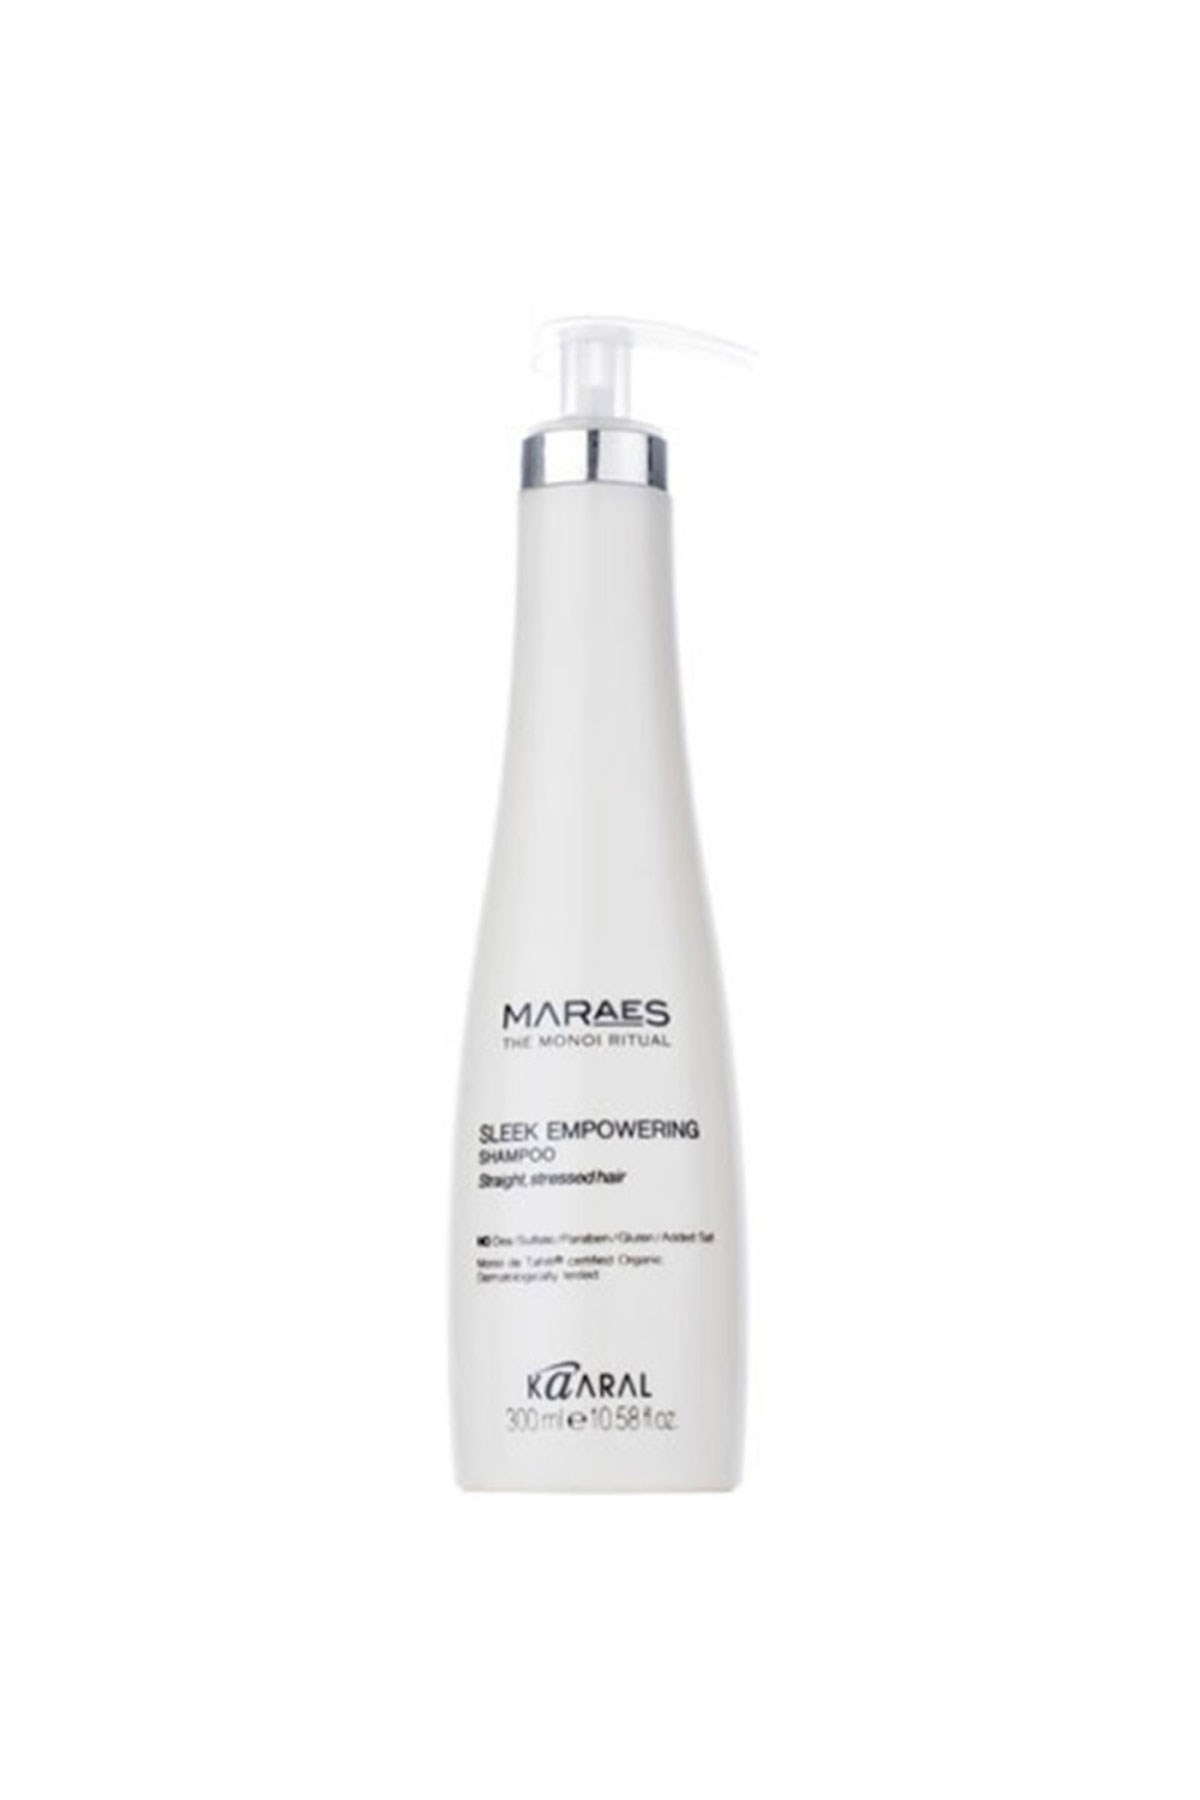 Maraes Sleek Empowering Saç Güçlendirici Sprey Bakım Şampuanı 300 ml